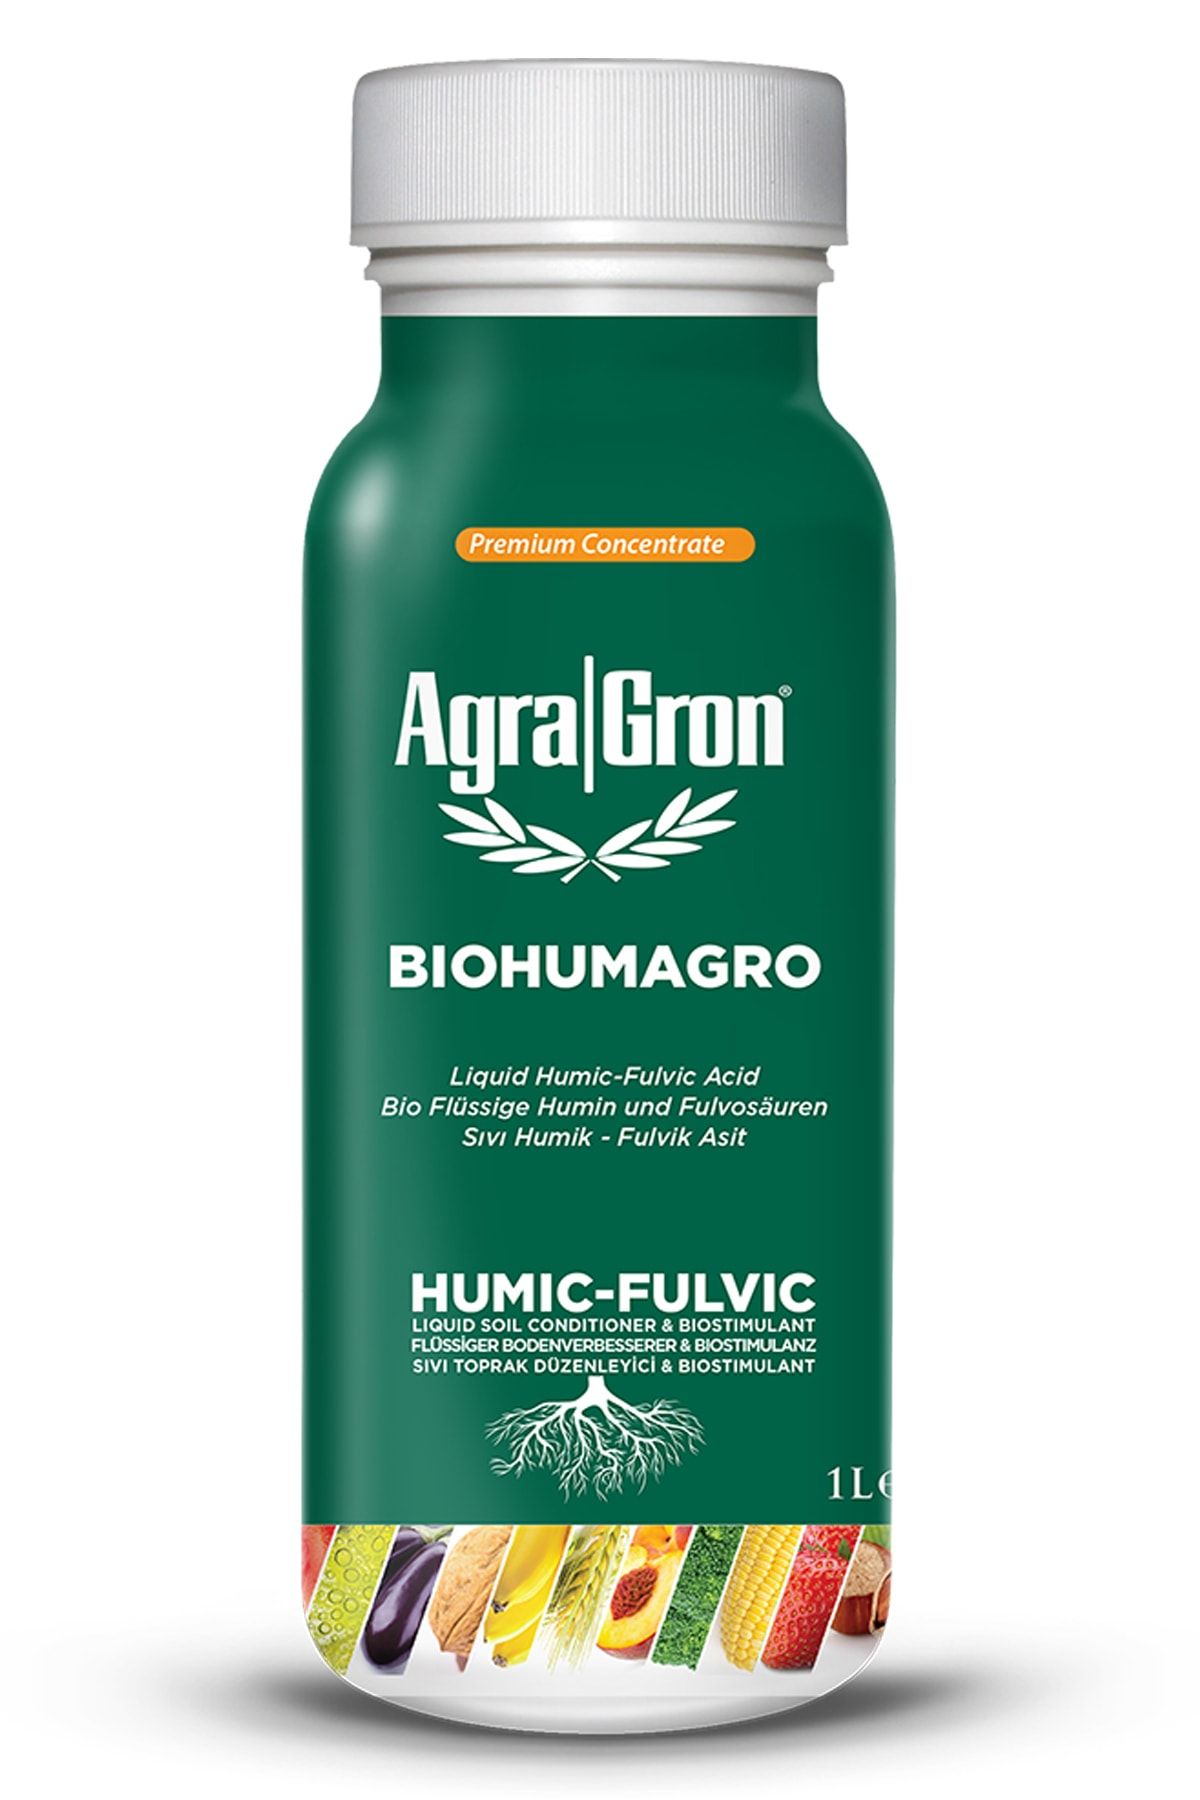 AgraGron Biohumagro Leonardit Menşeili Hümik Fülvik - Biohumagro 1 Lt. Organik Toprak Düzenleyici